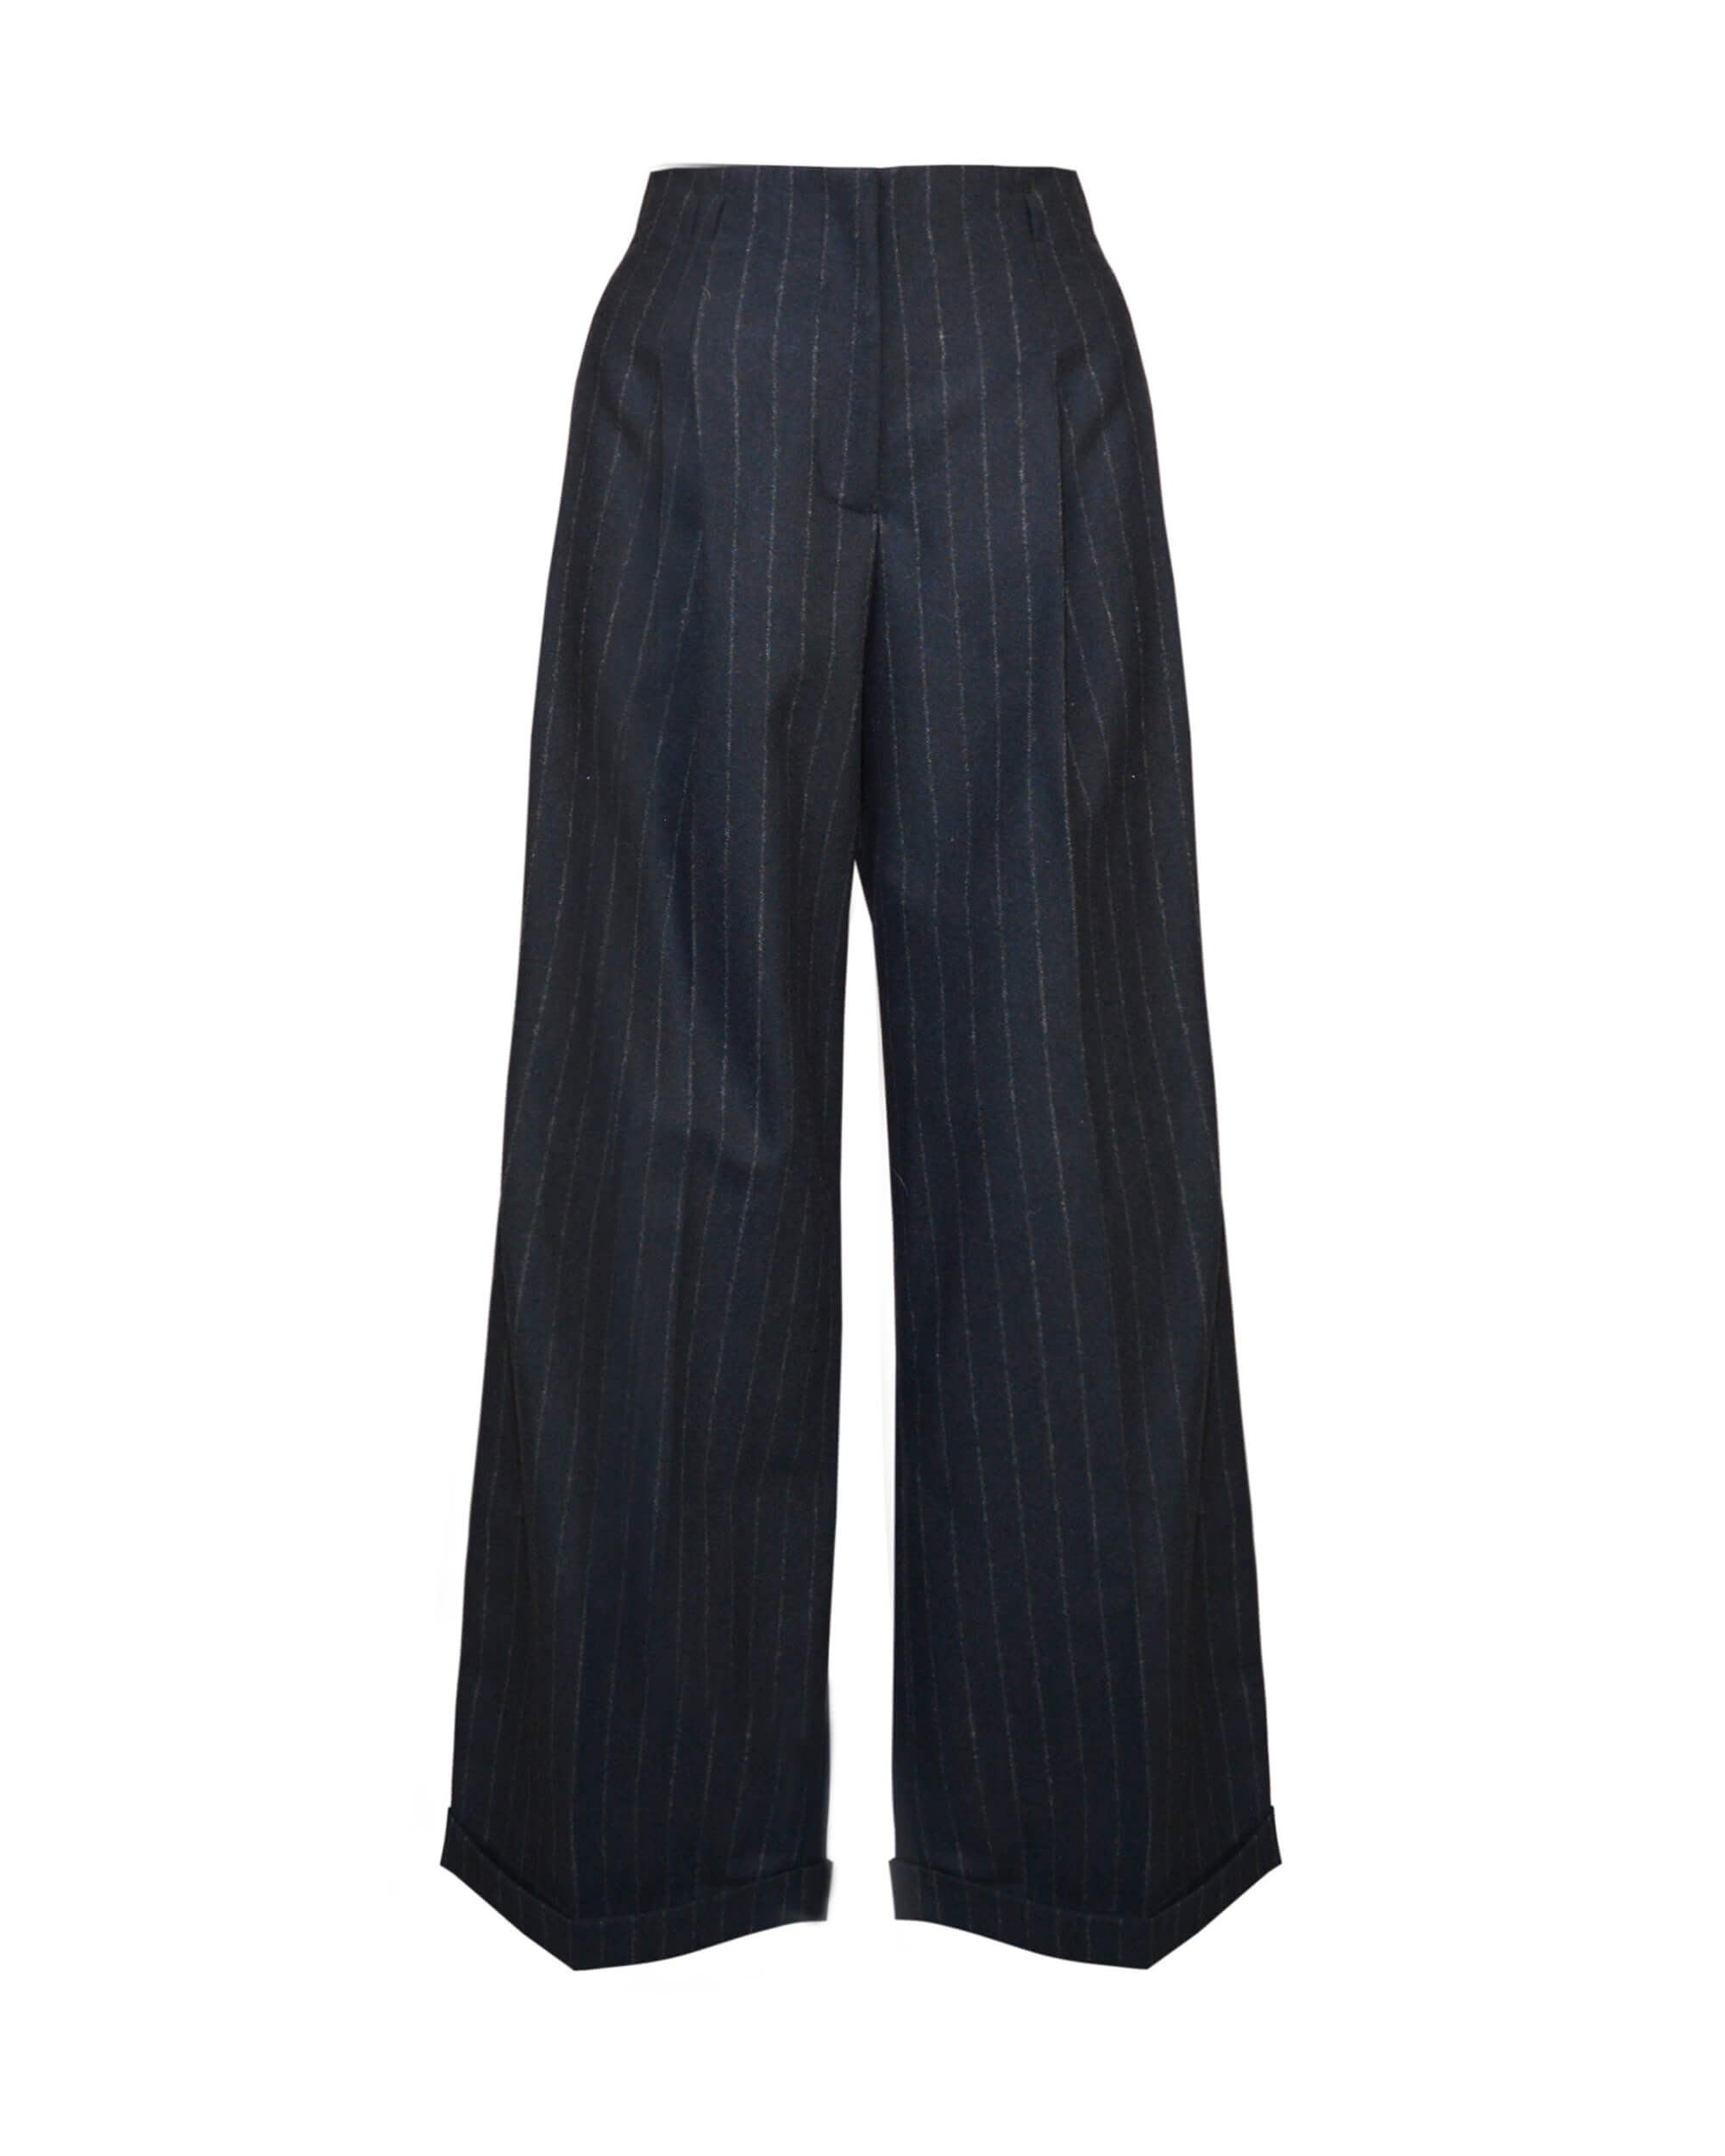 Chalk-stripe trousers beige - Woman - 14 - MANGO | £49.99 | One New Change